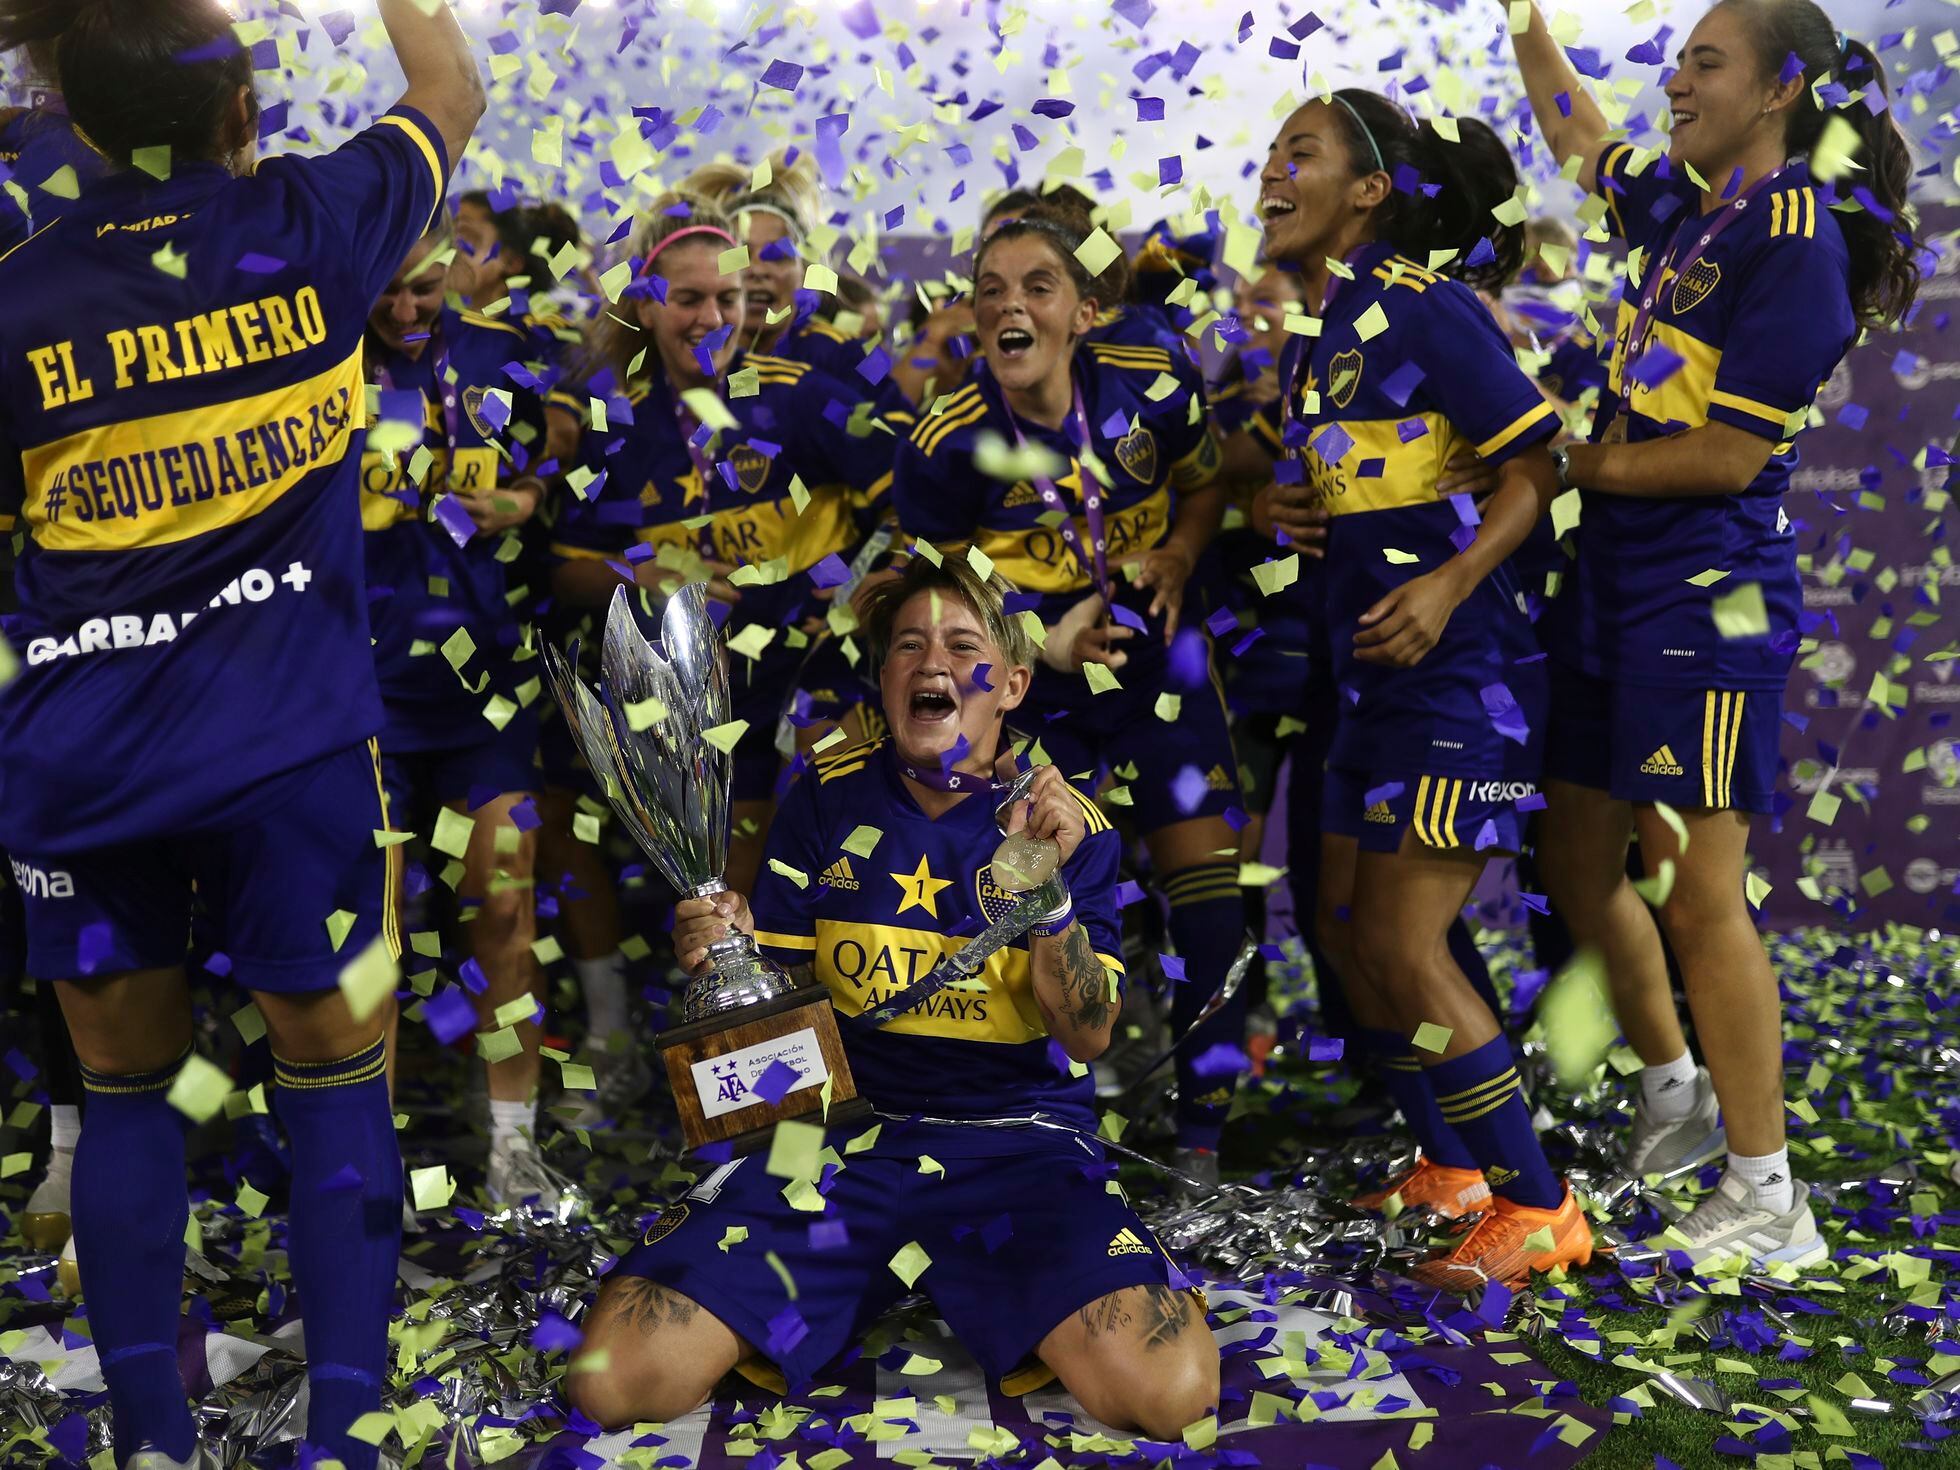 Futebol Feminino: Encontra o teu clube e Vem Jogar